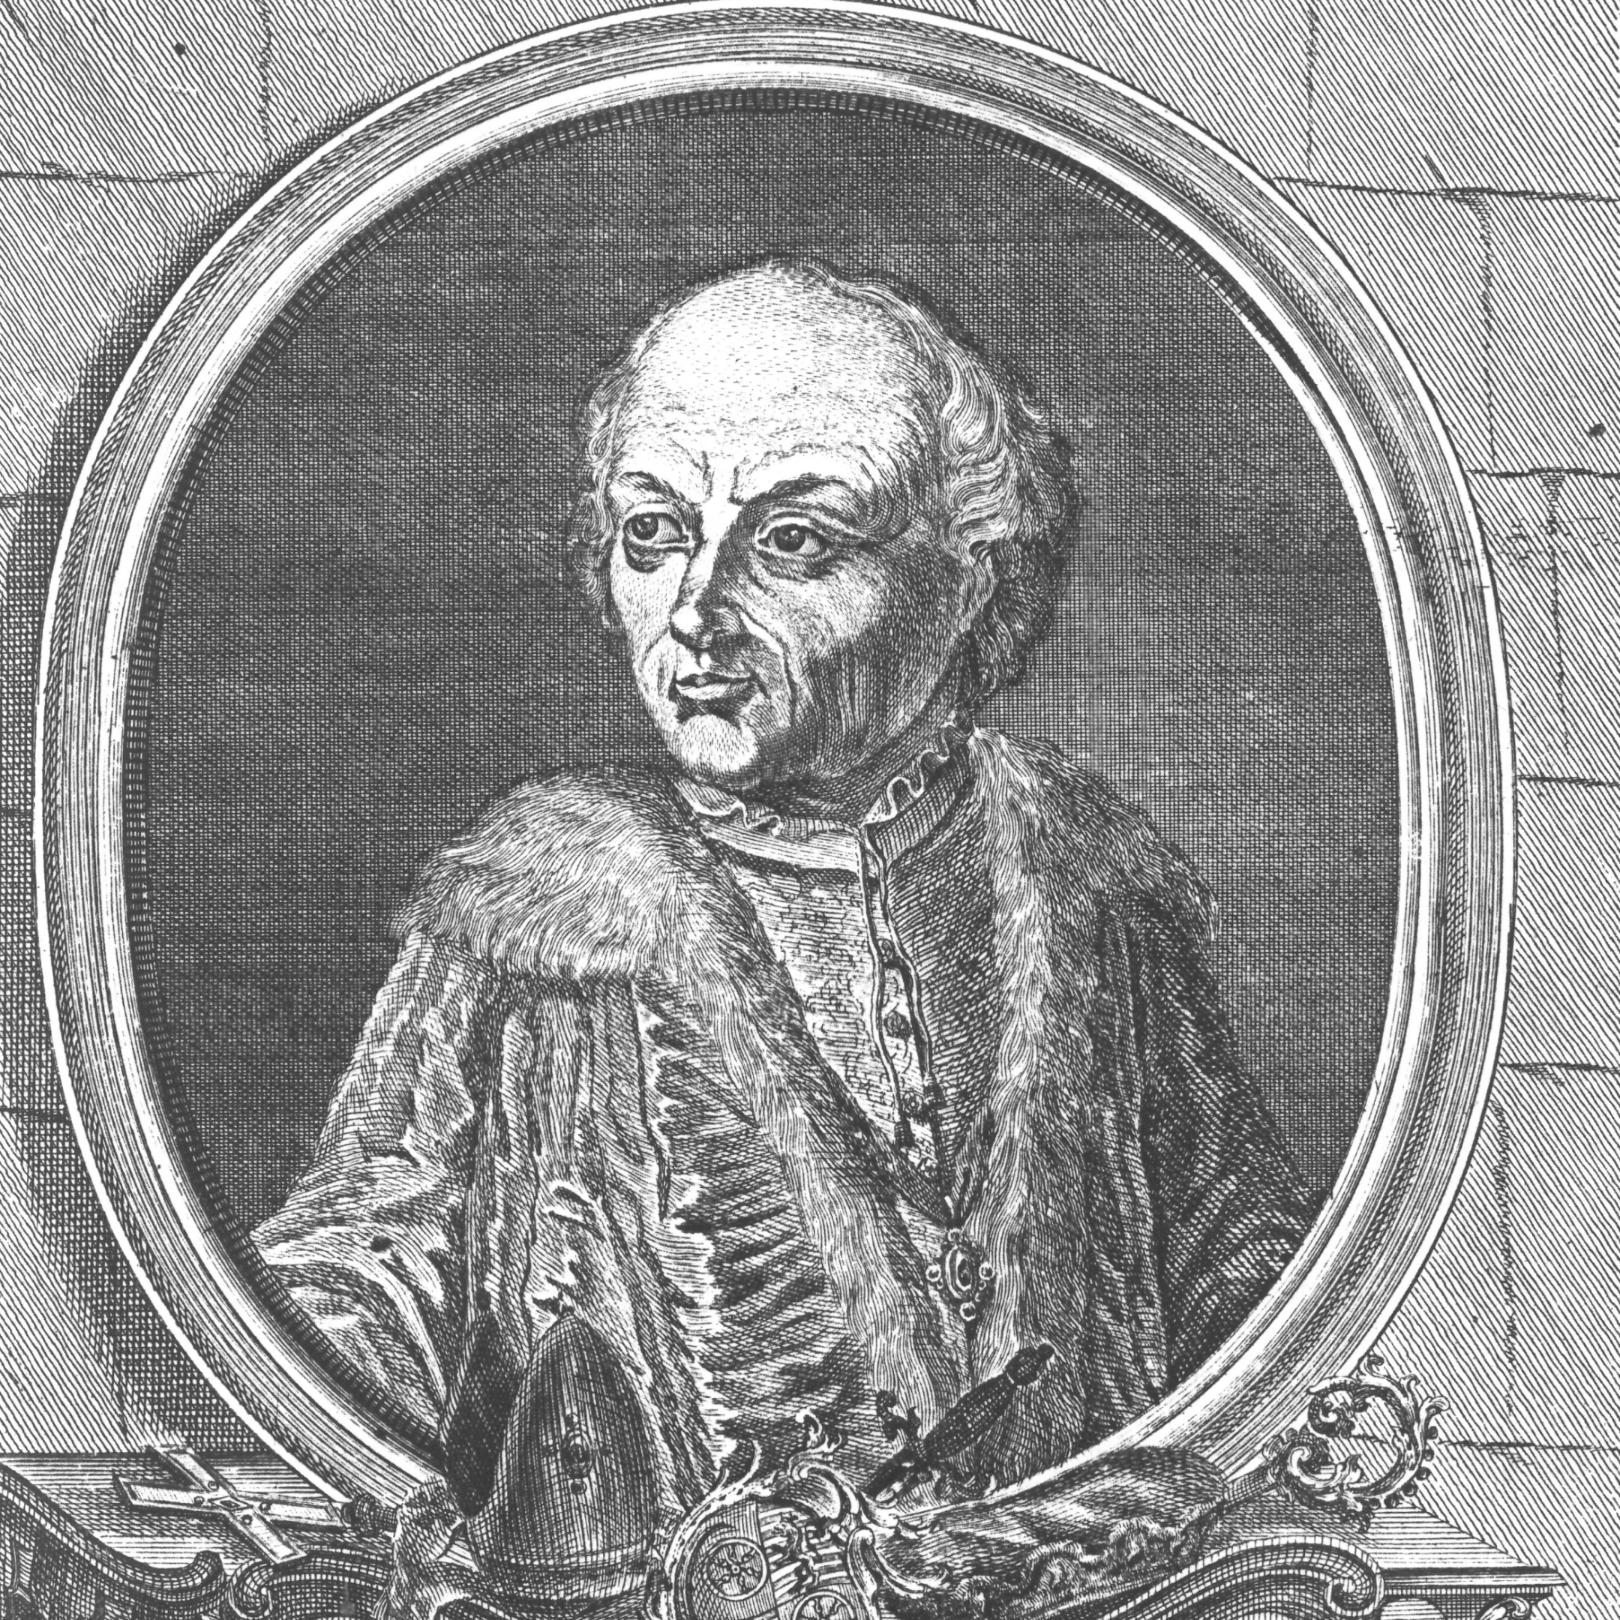 Balduin von Luxemburg, gezeichnet ca. 1774 (c) Wilhelm Christian Rücker / IMKG